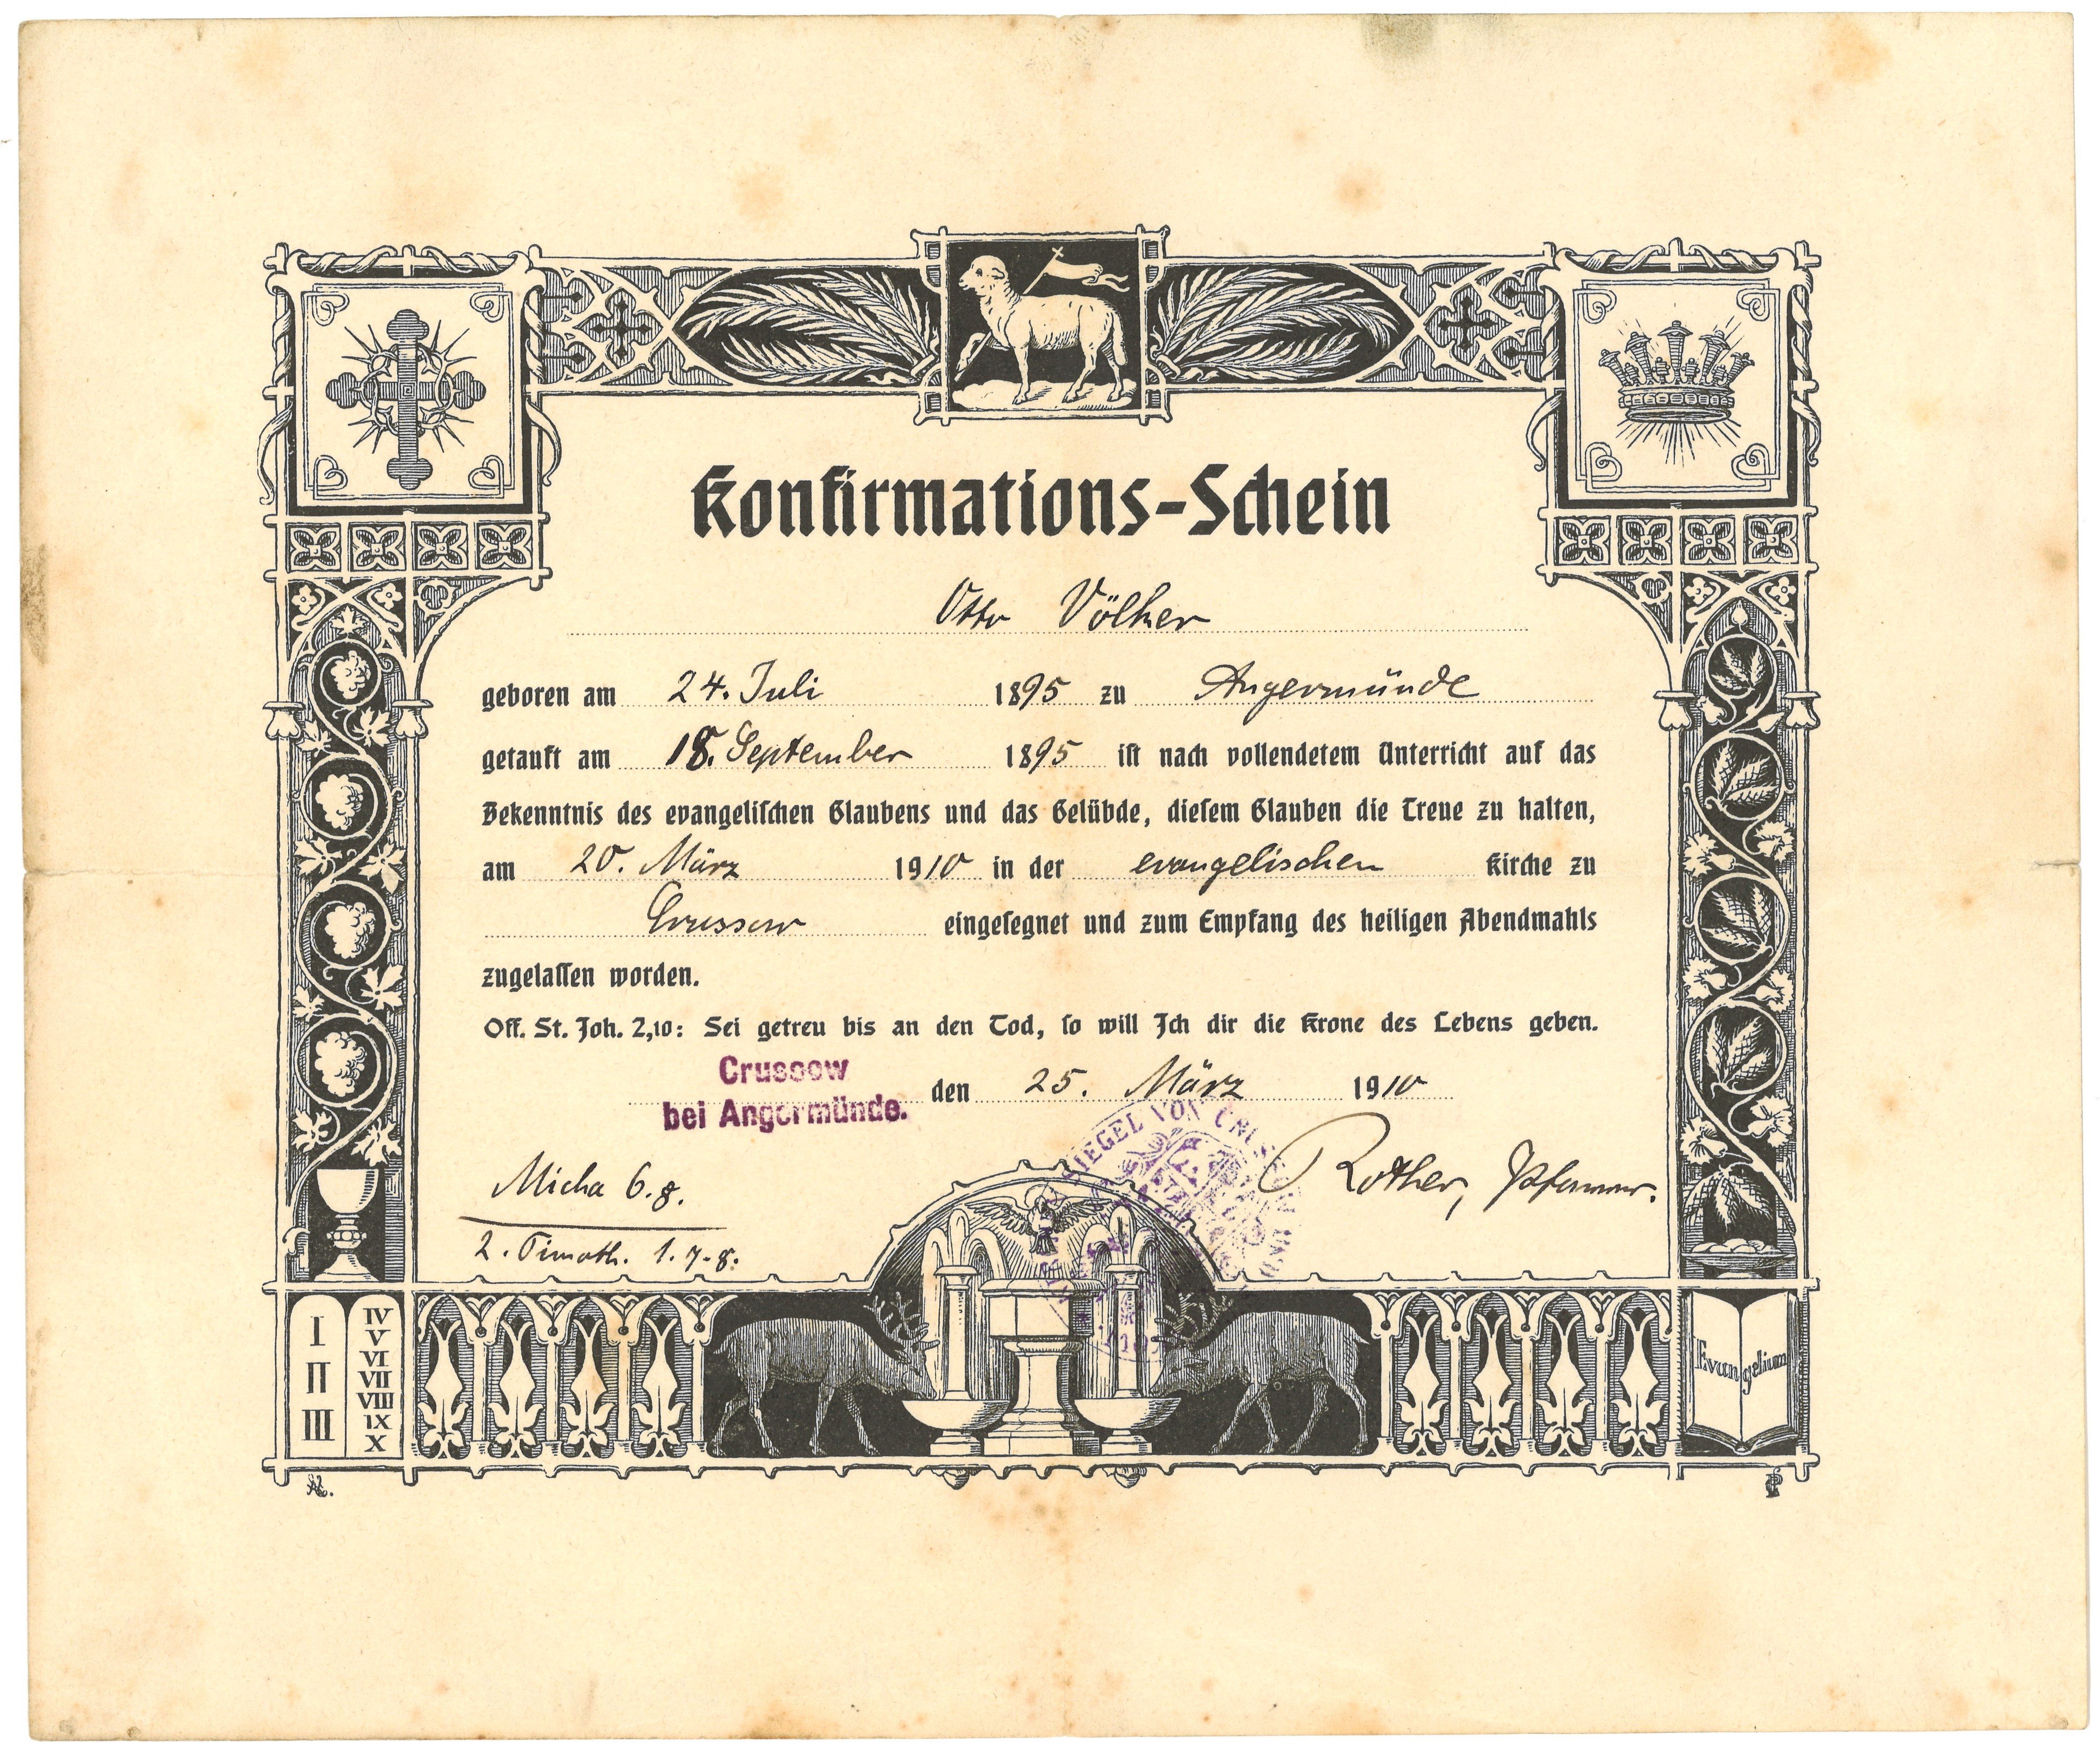 Konfirmationsschein für Otto Völker in Crussow bei Angermünde (1910) (Landesgeschichtliche Vereinigung für die Mark Brandenburg e.V., Archiv CC BY)